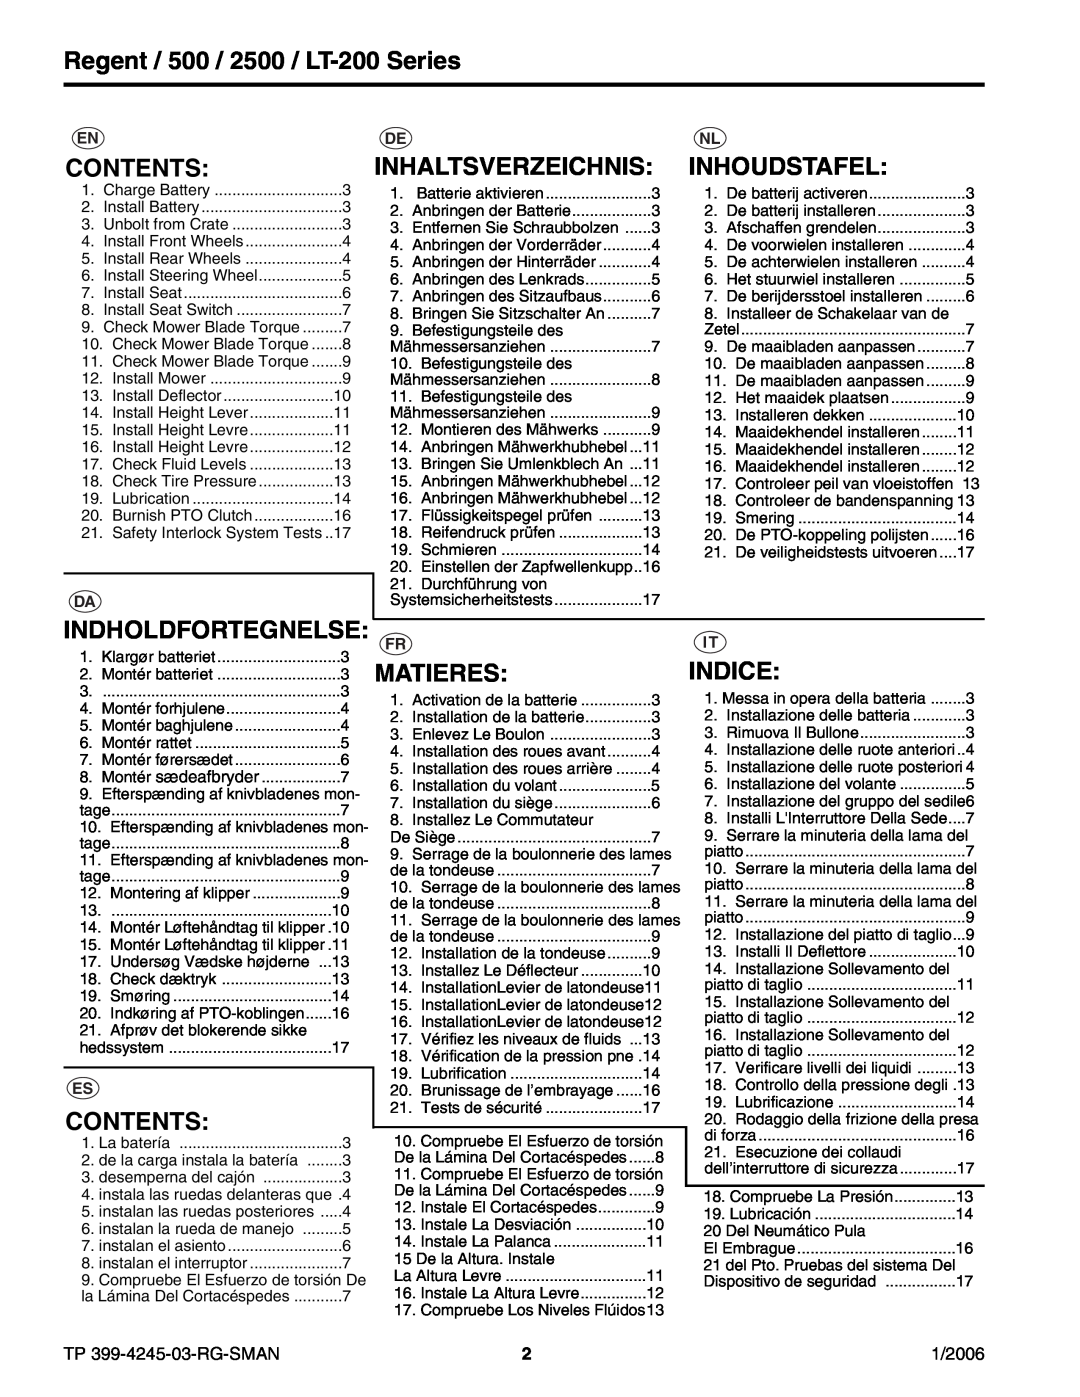 Simplicity manual Regent / 500 / 2500 / LT-200Series, Contents, Inhaltsverzeichnis, Inhoudstafel, Matieres, Indice 